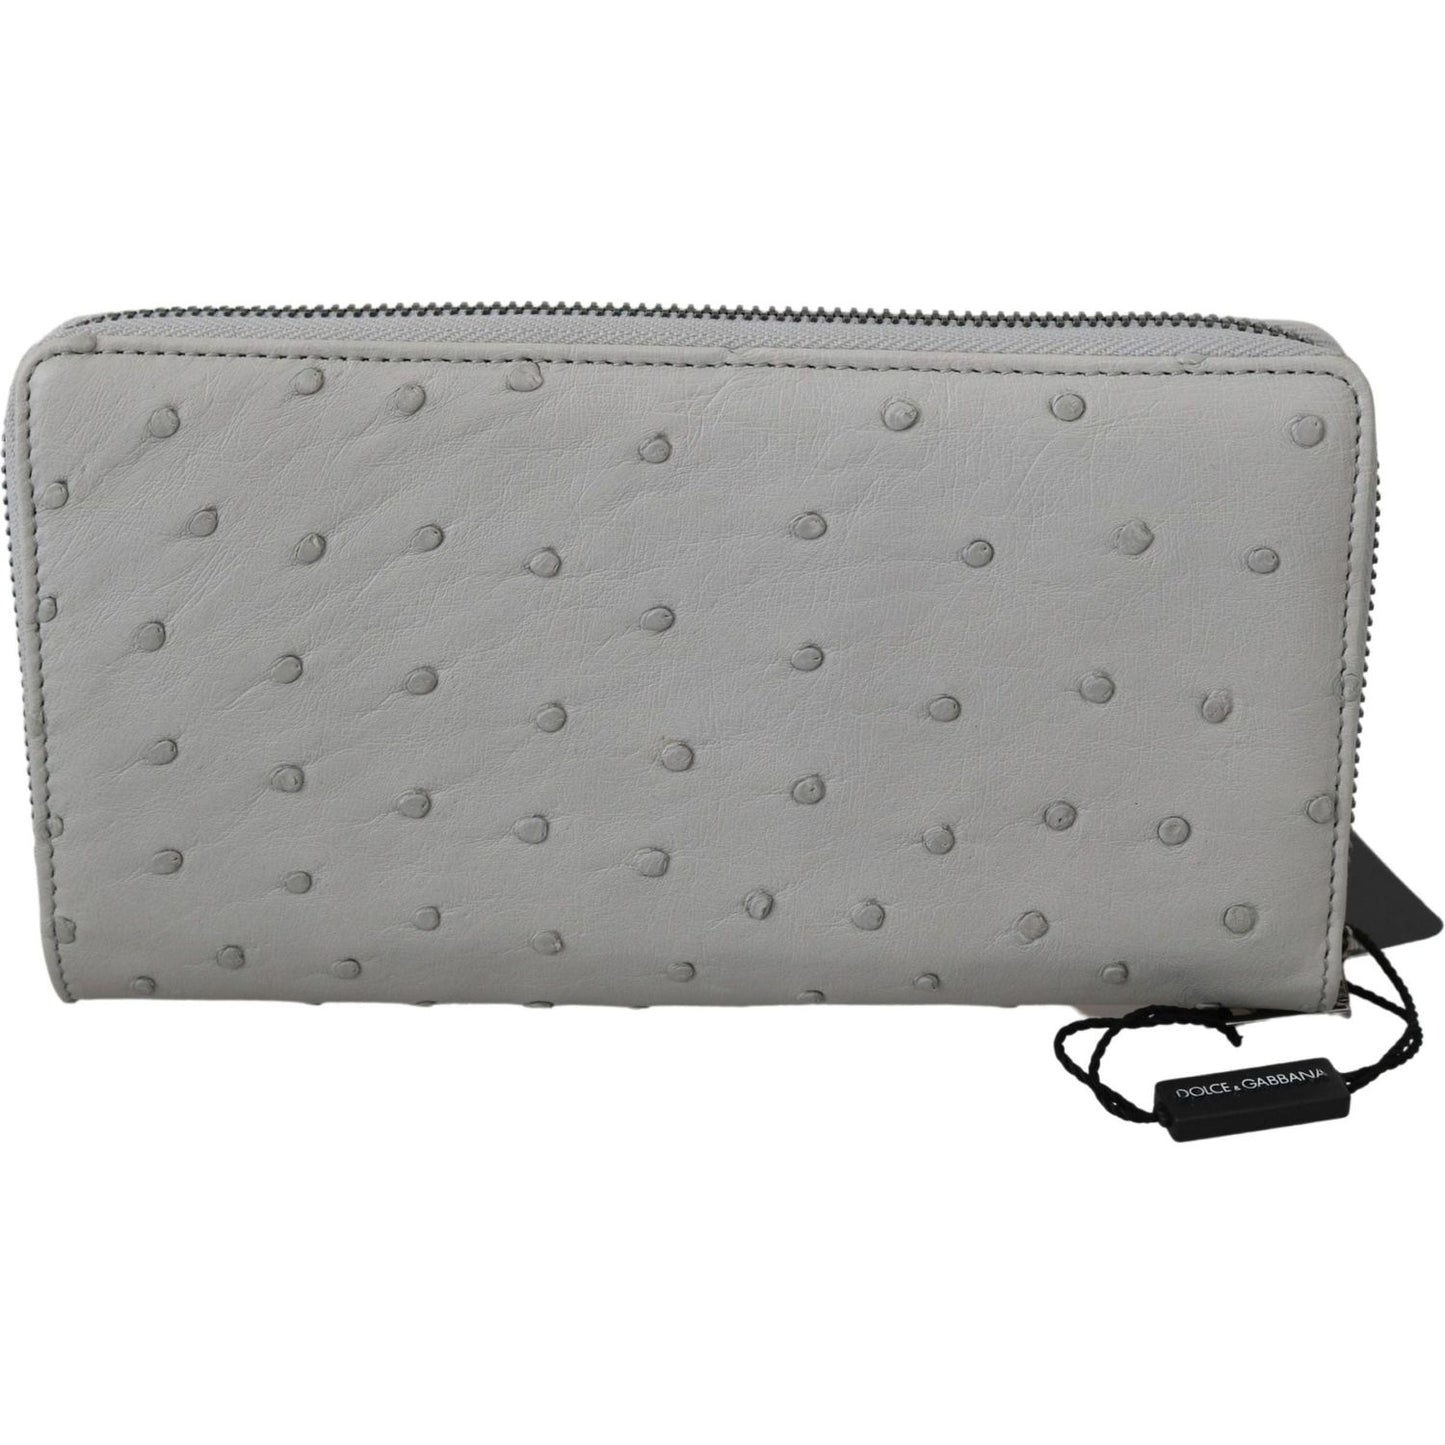 Dolce & Gabbana Elegant Ostrich Leather Continental Wallet white-ostrich-leather-continental-mens-clutch-wallet Clutch IMG_4325-scaled-fa2ab1a1-067.jpg